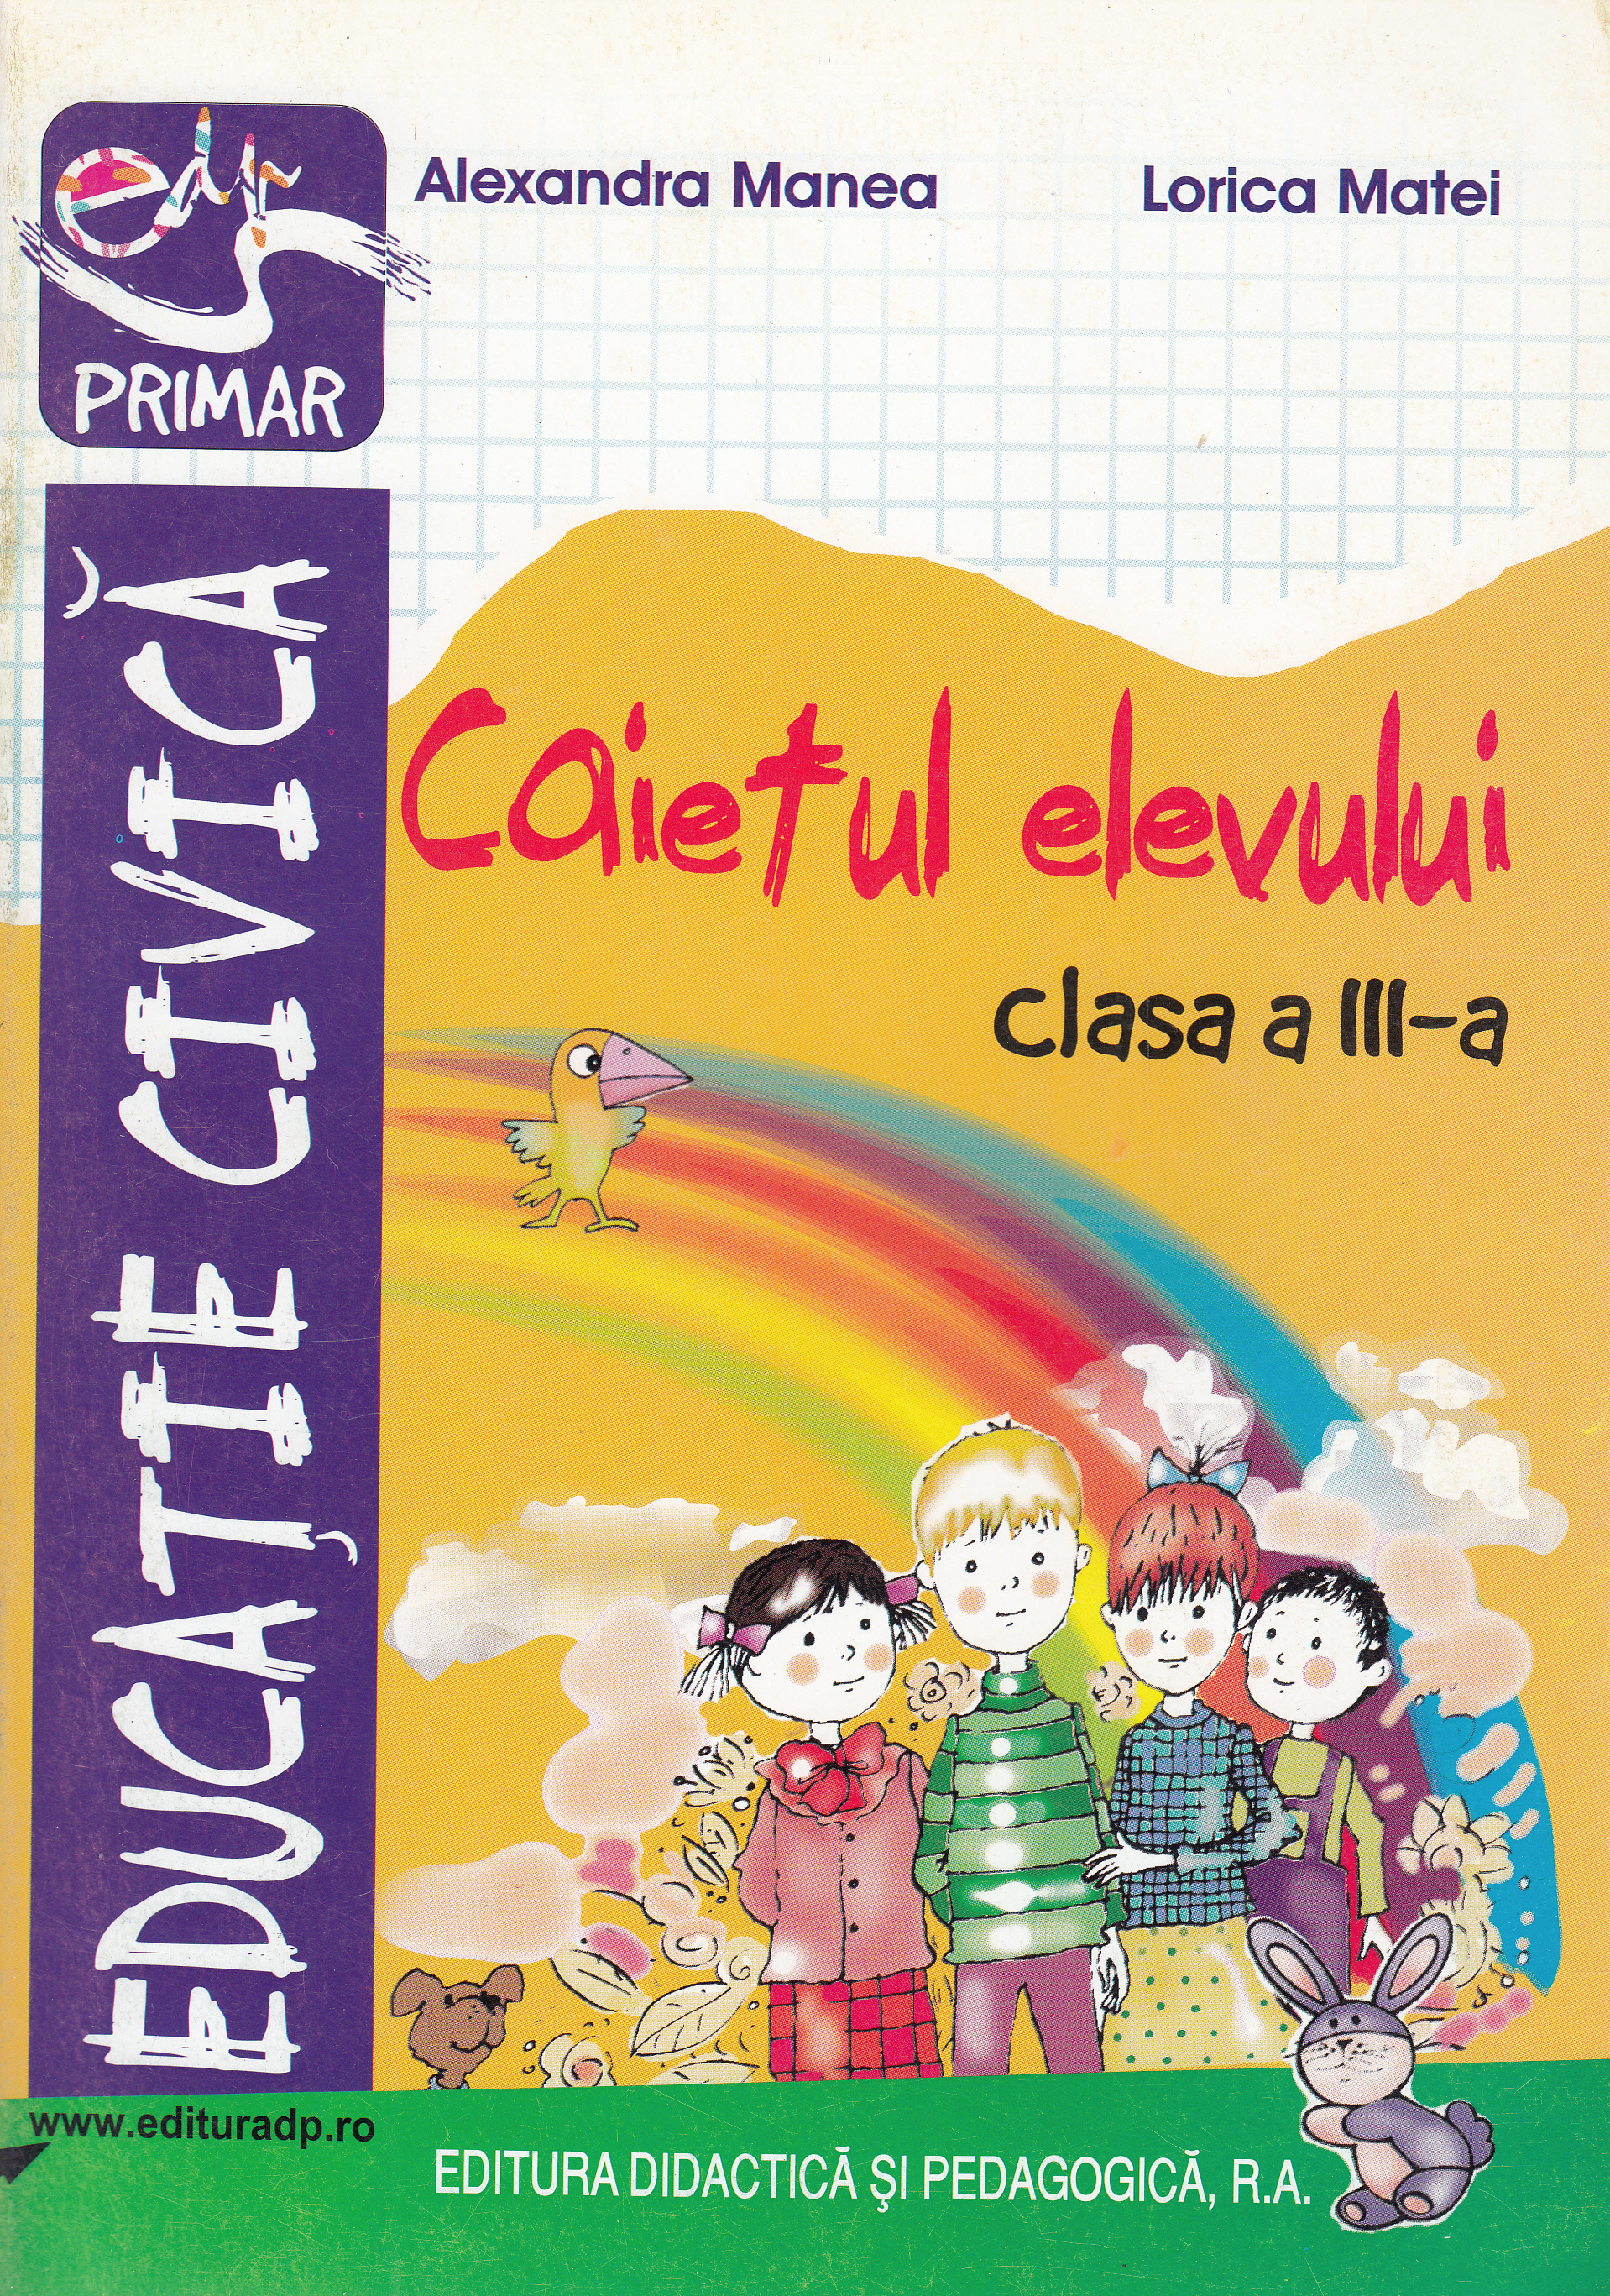 Educatie civica - Clasa 3 - Caietul elevului - Alexandra Manea, Lorica Matei